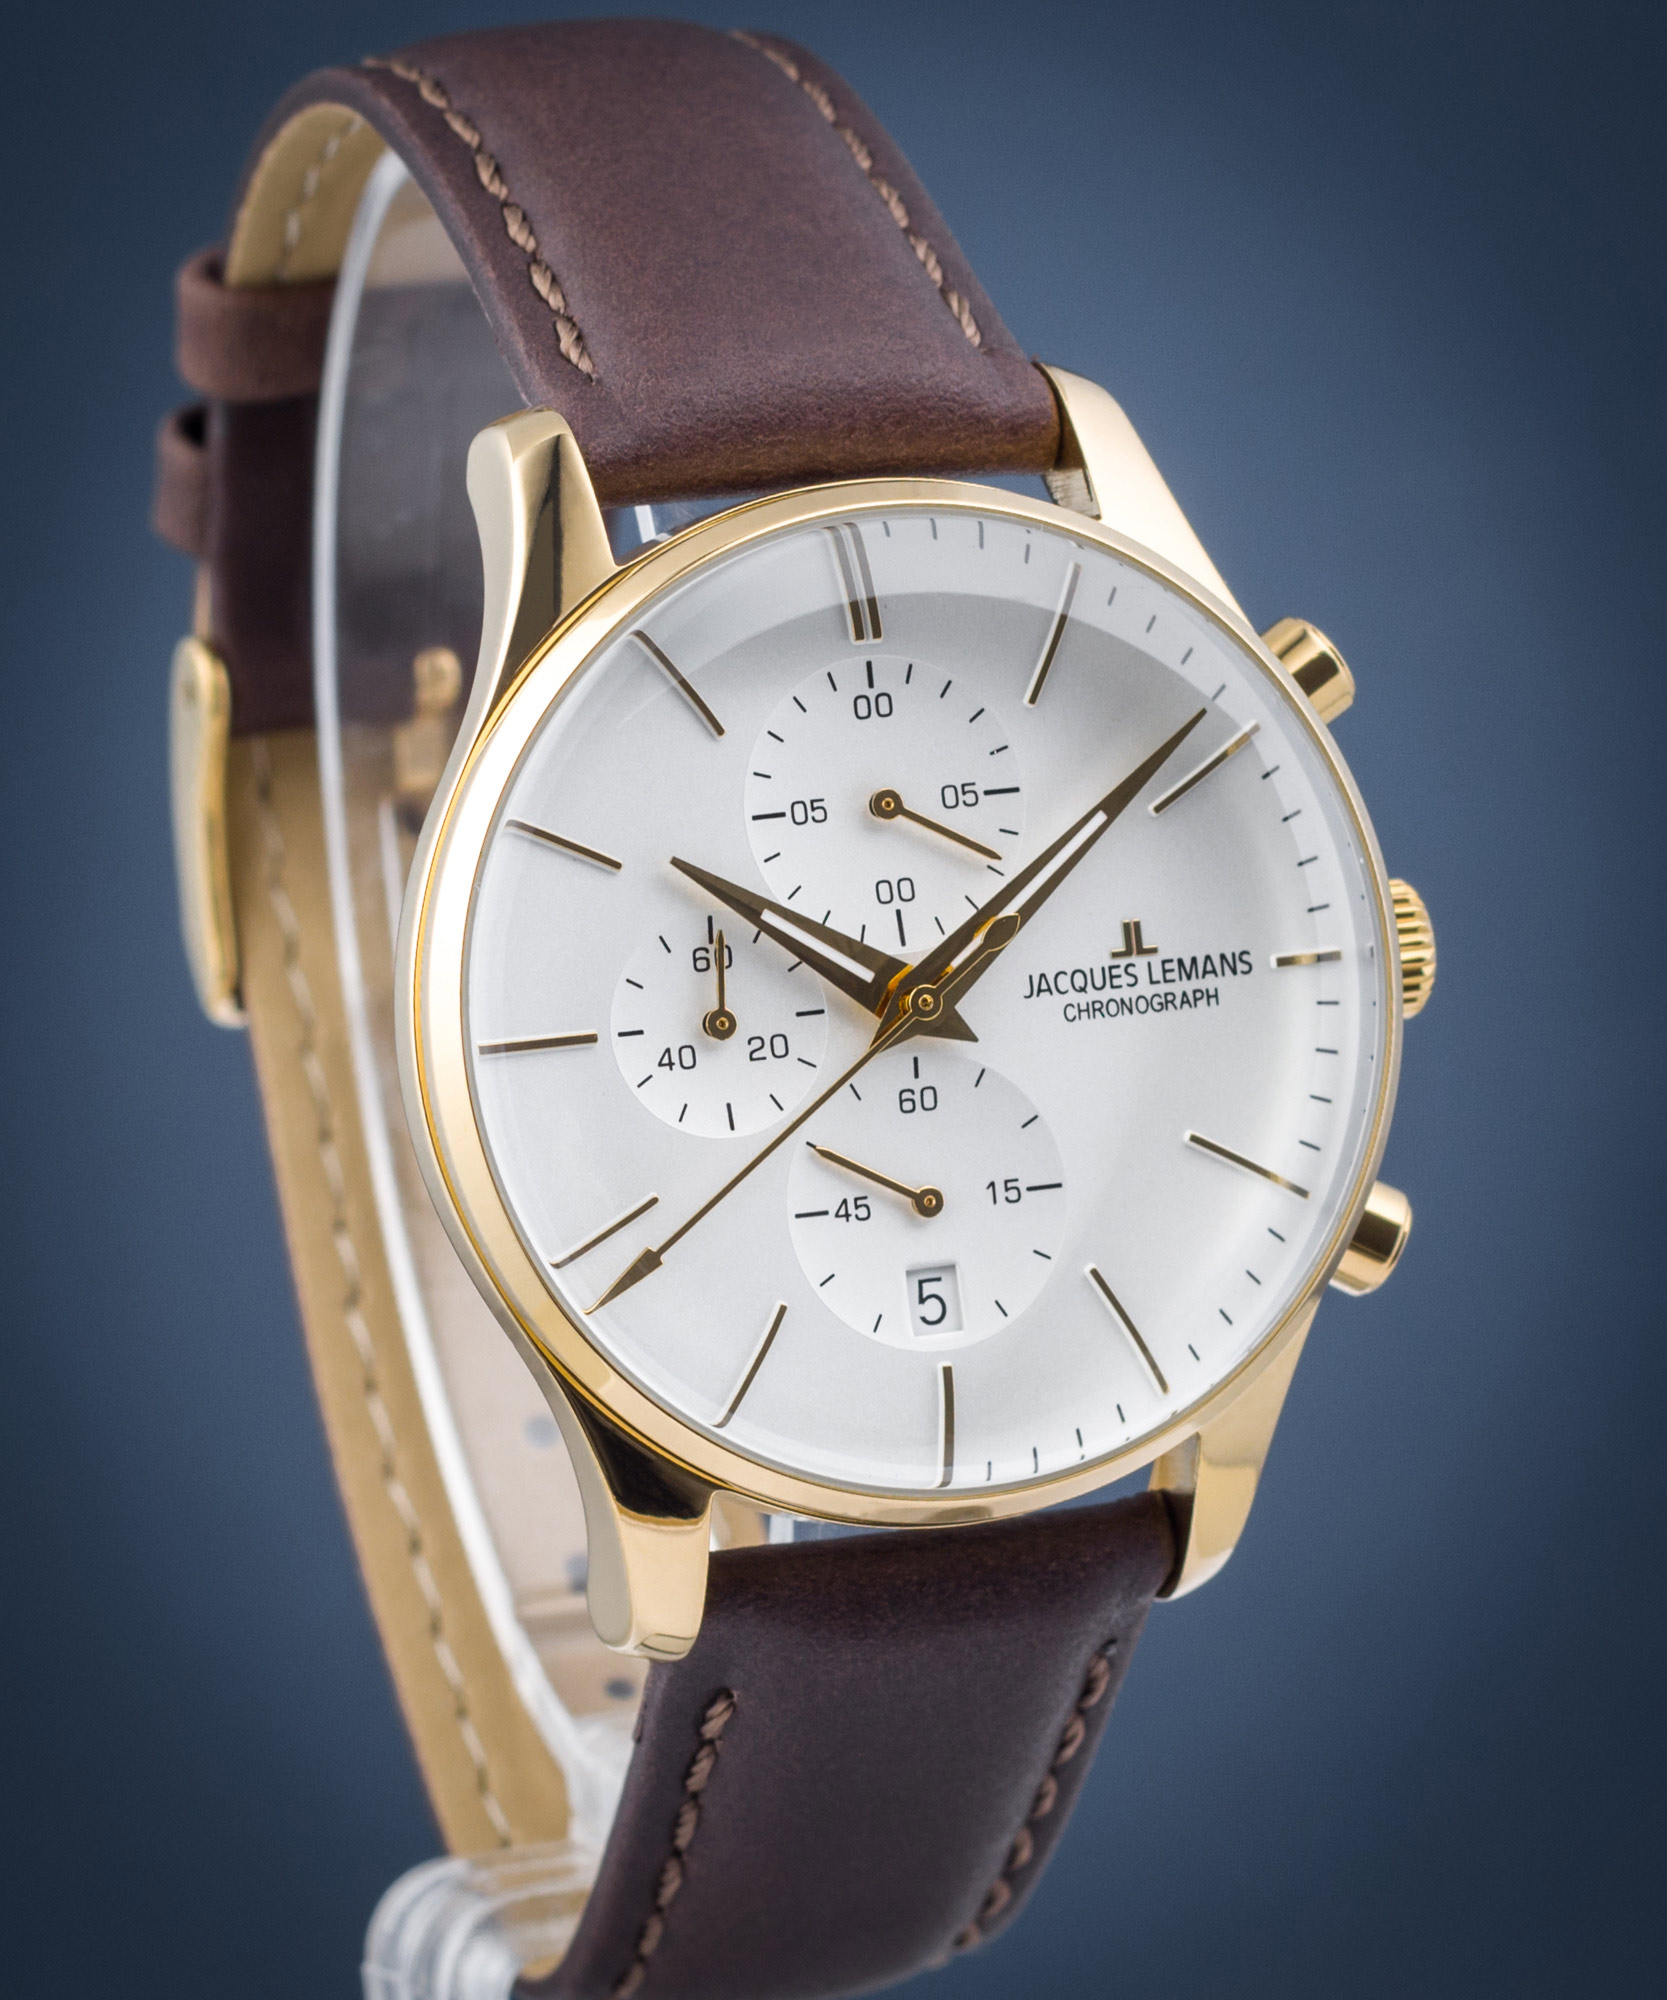 1-2163G - London Chronograph Jacques • Lemans Watch